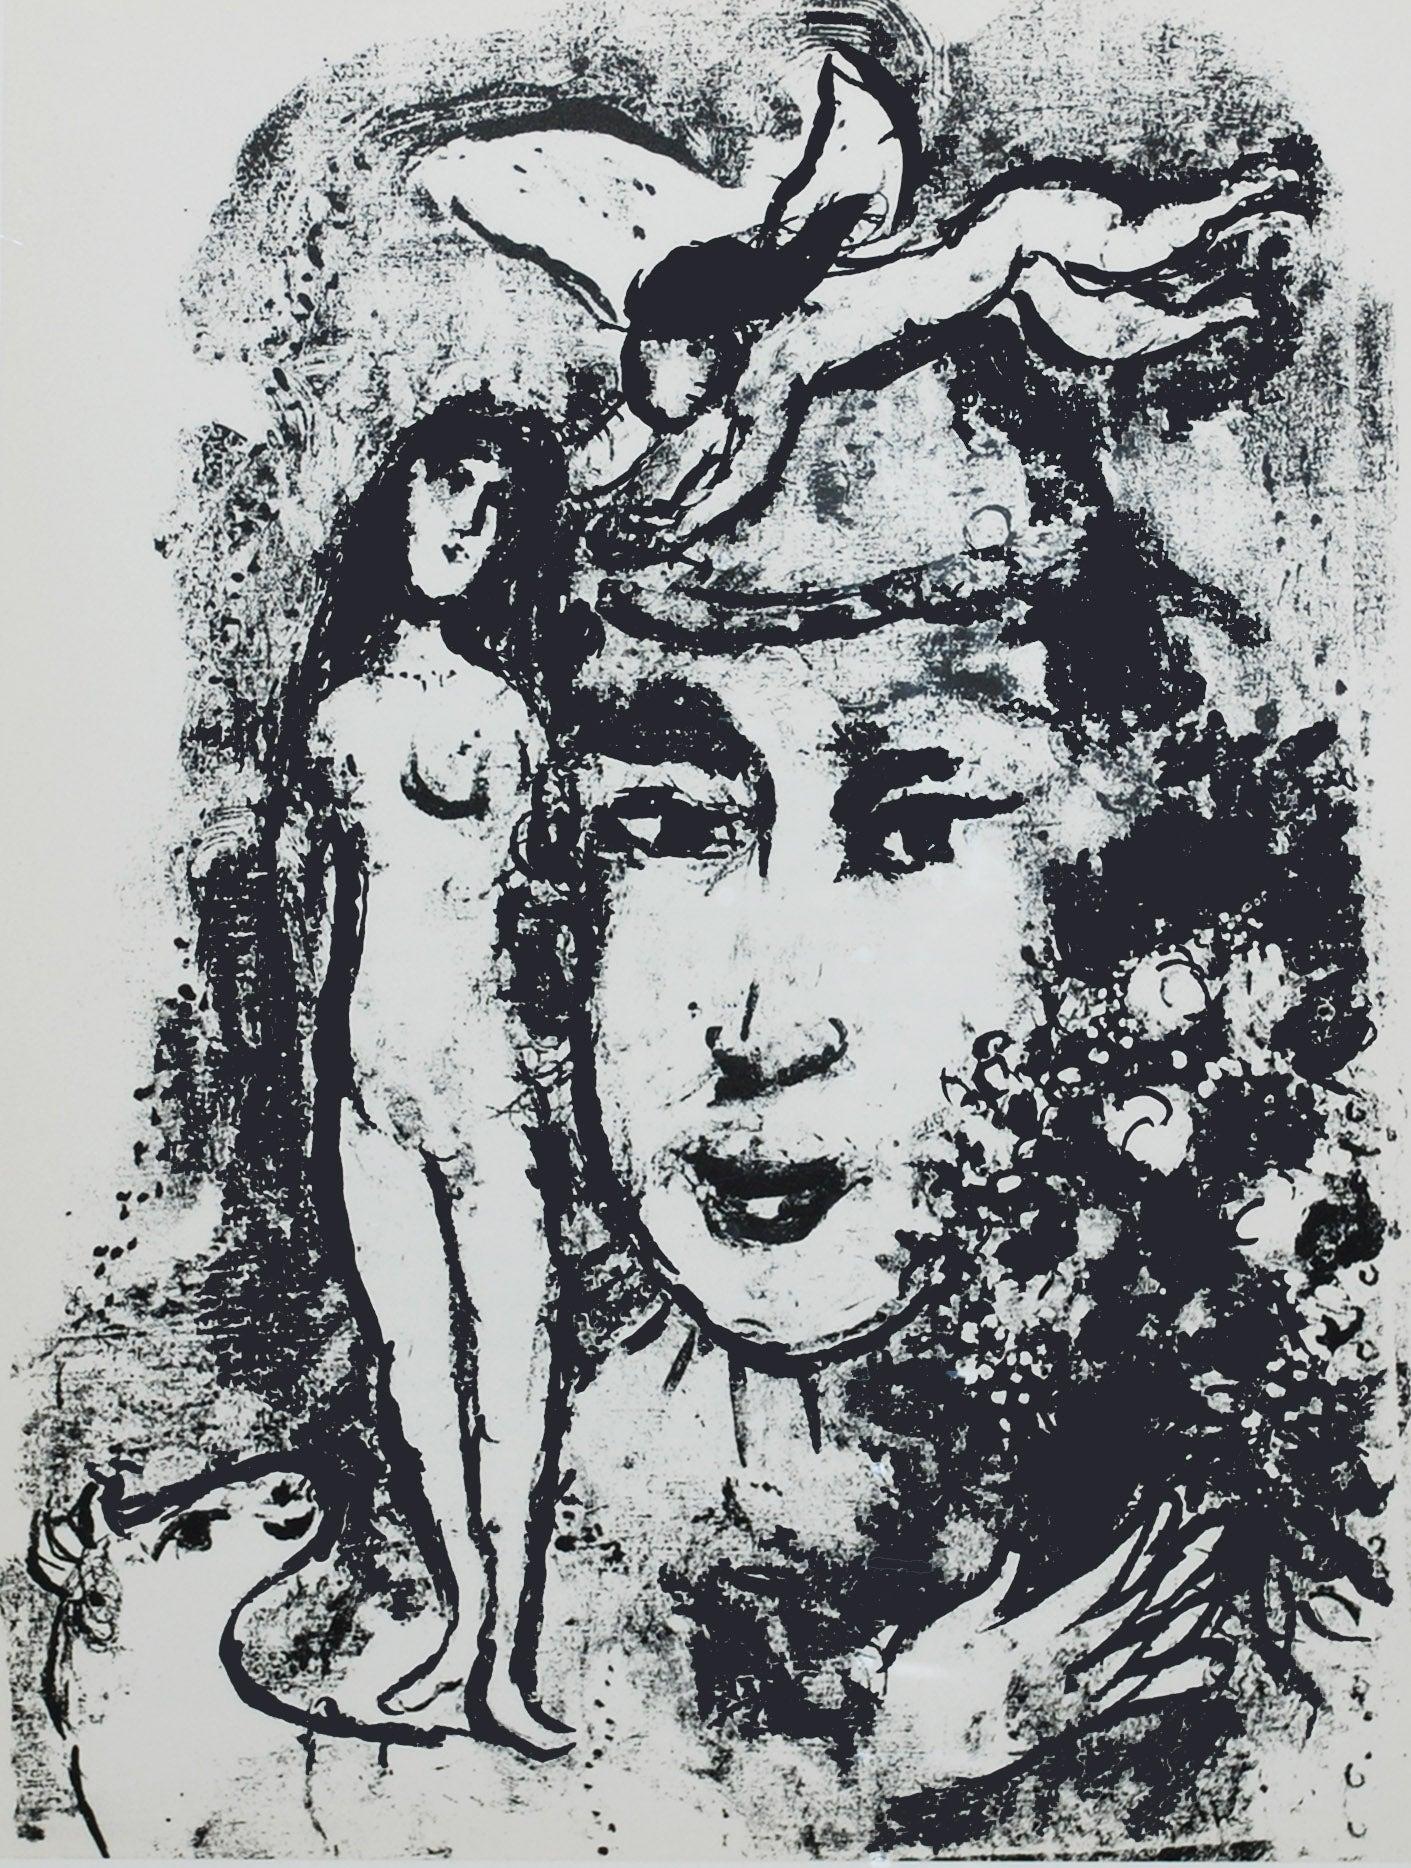 Künstler: Marc Chagall
Titel: Der Weißclown
Portfolio: Derriere Le Miroir 147
Medium: Lithographie
Jahr: 1964
Auflage: Unnumeriert
Gerahmt Größe: 21 1/4" x 17 1/4"
Blattgröße: 15" x 11"
Unterschrift: Unsigniert
Referenz: Cramer 59, Mourlot 411